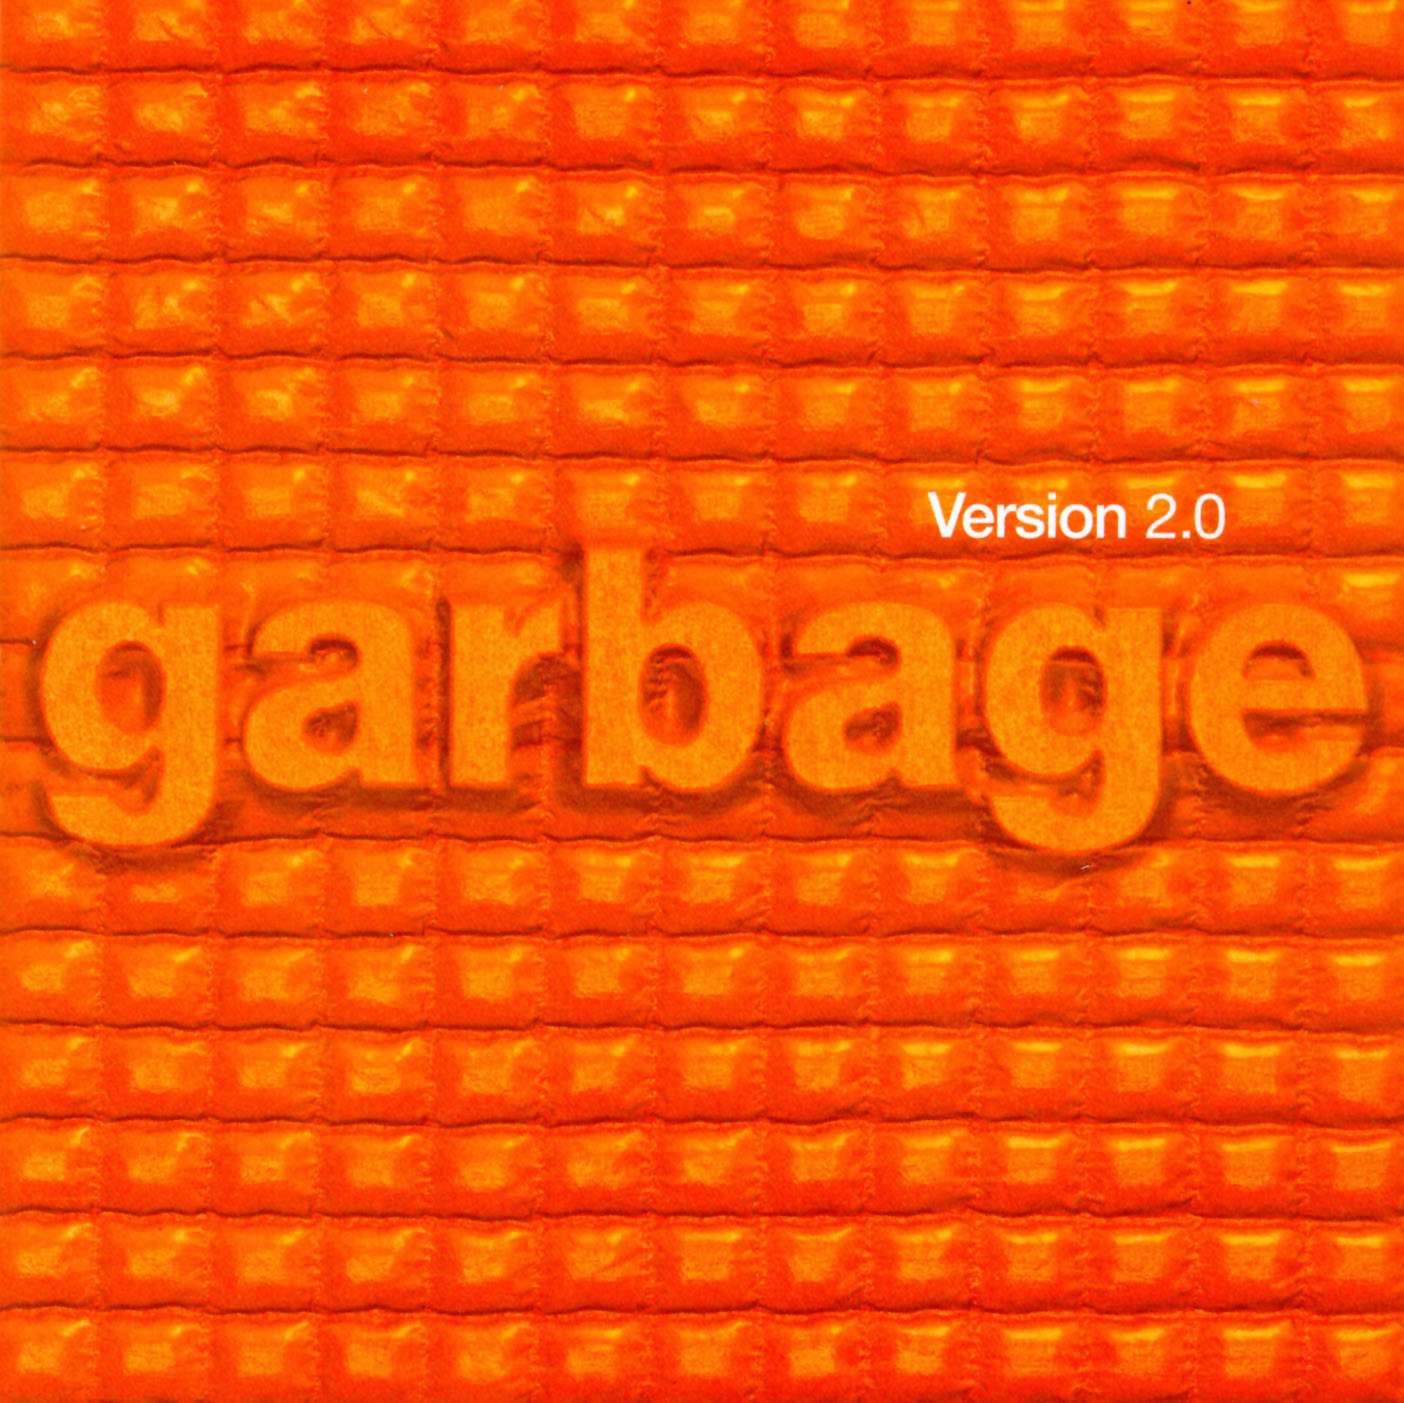 GARBAGE - VERSION 2.0